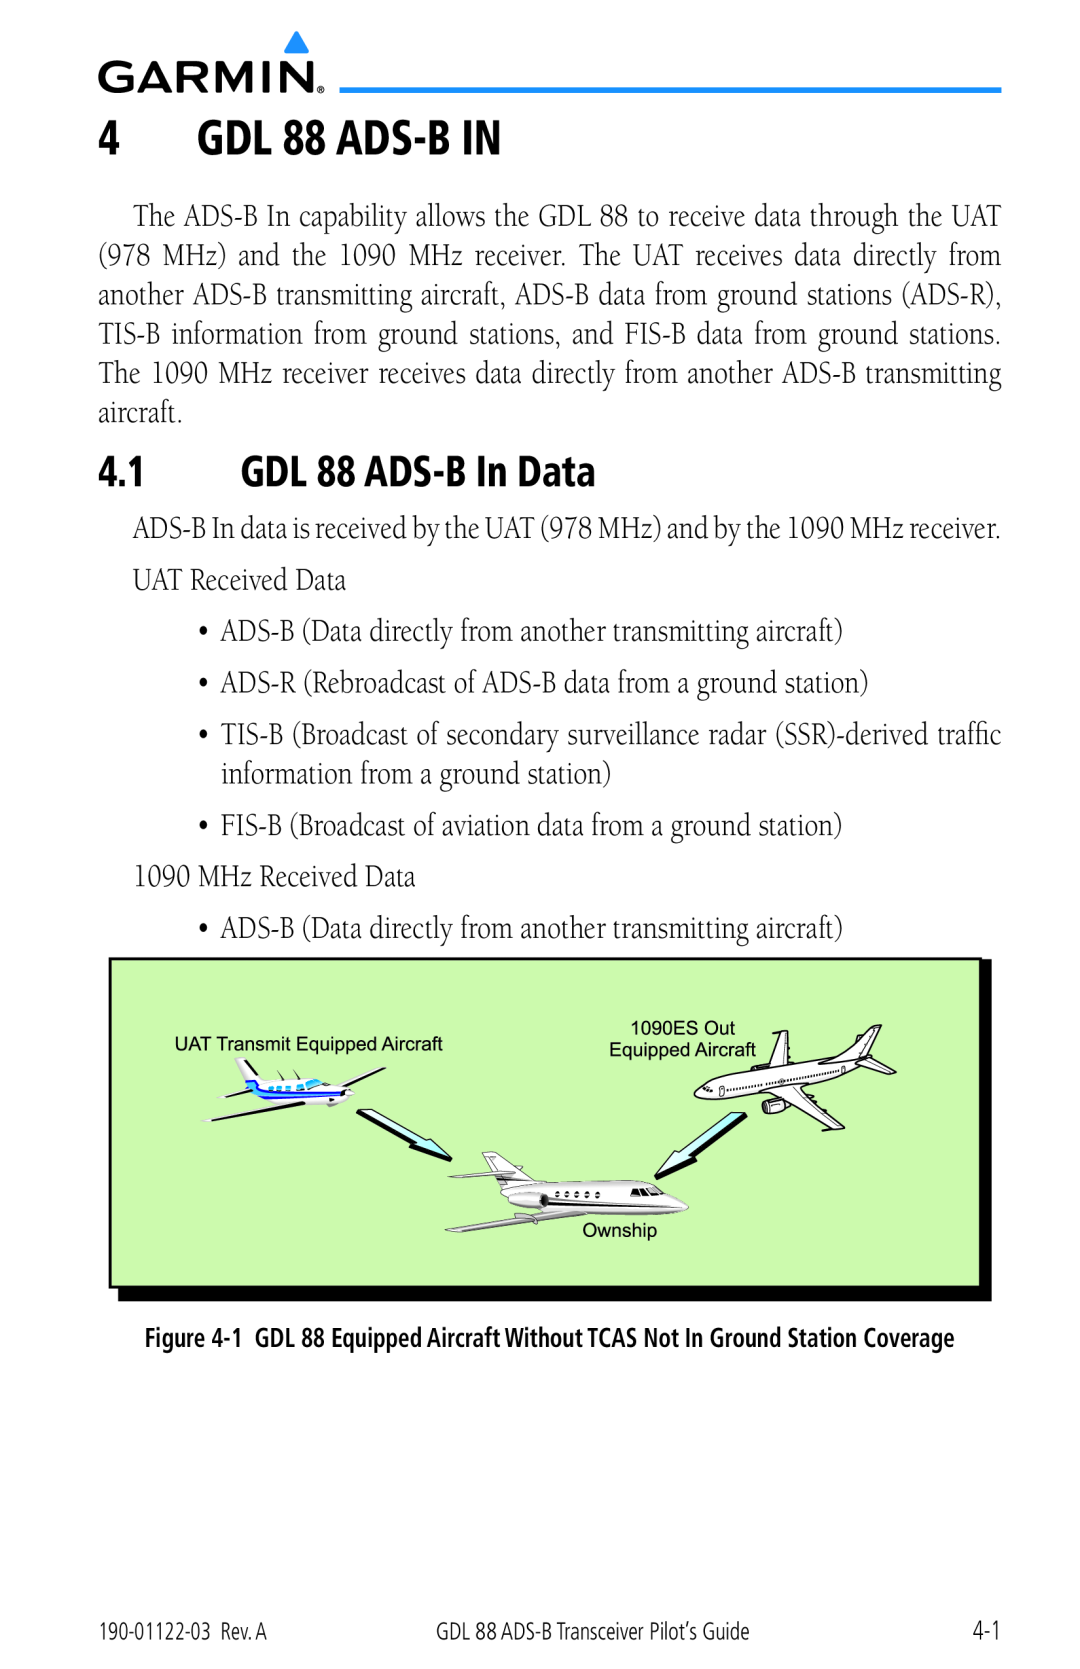 Garmin manual GDL 88 ADS-B IN, GDL 88 ADS-B In Data 